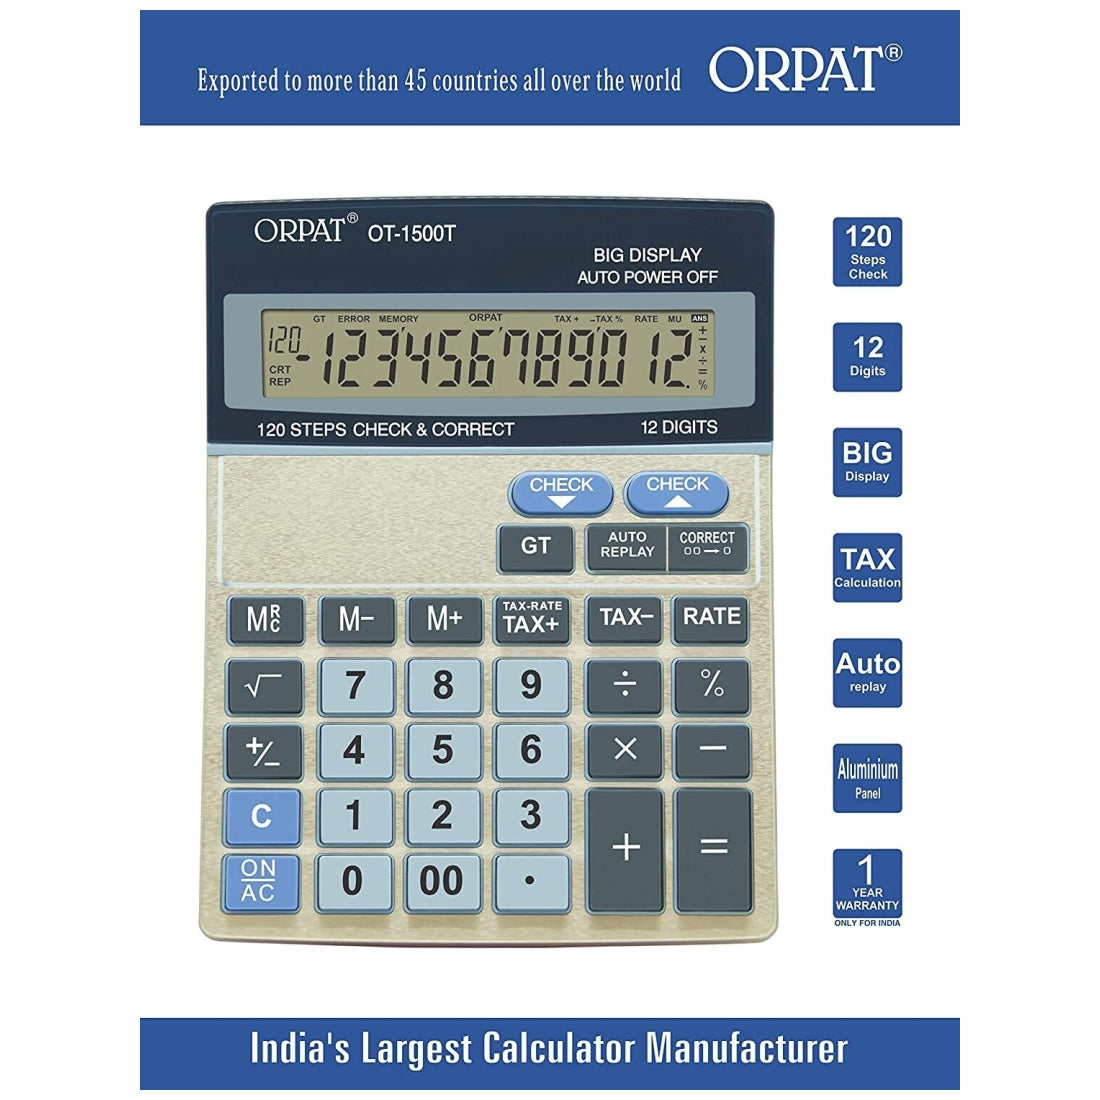 Orpat OT-1500T Big Display calculator